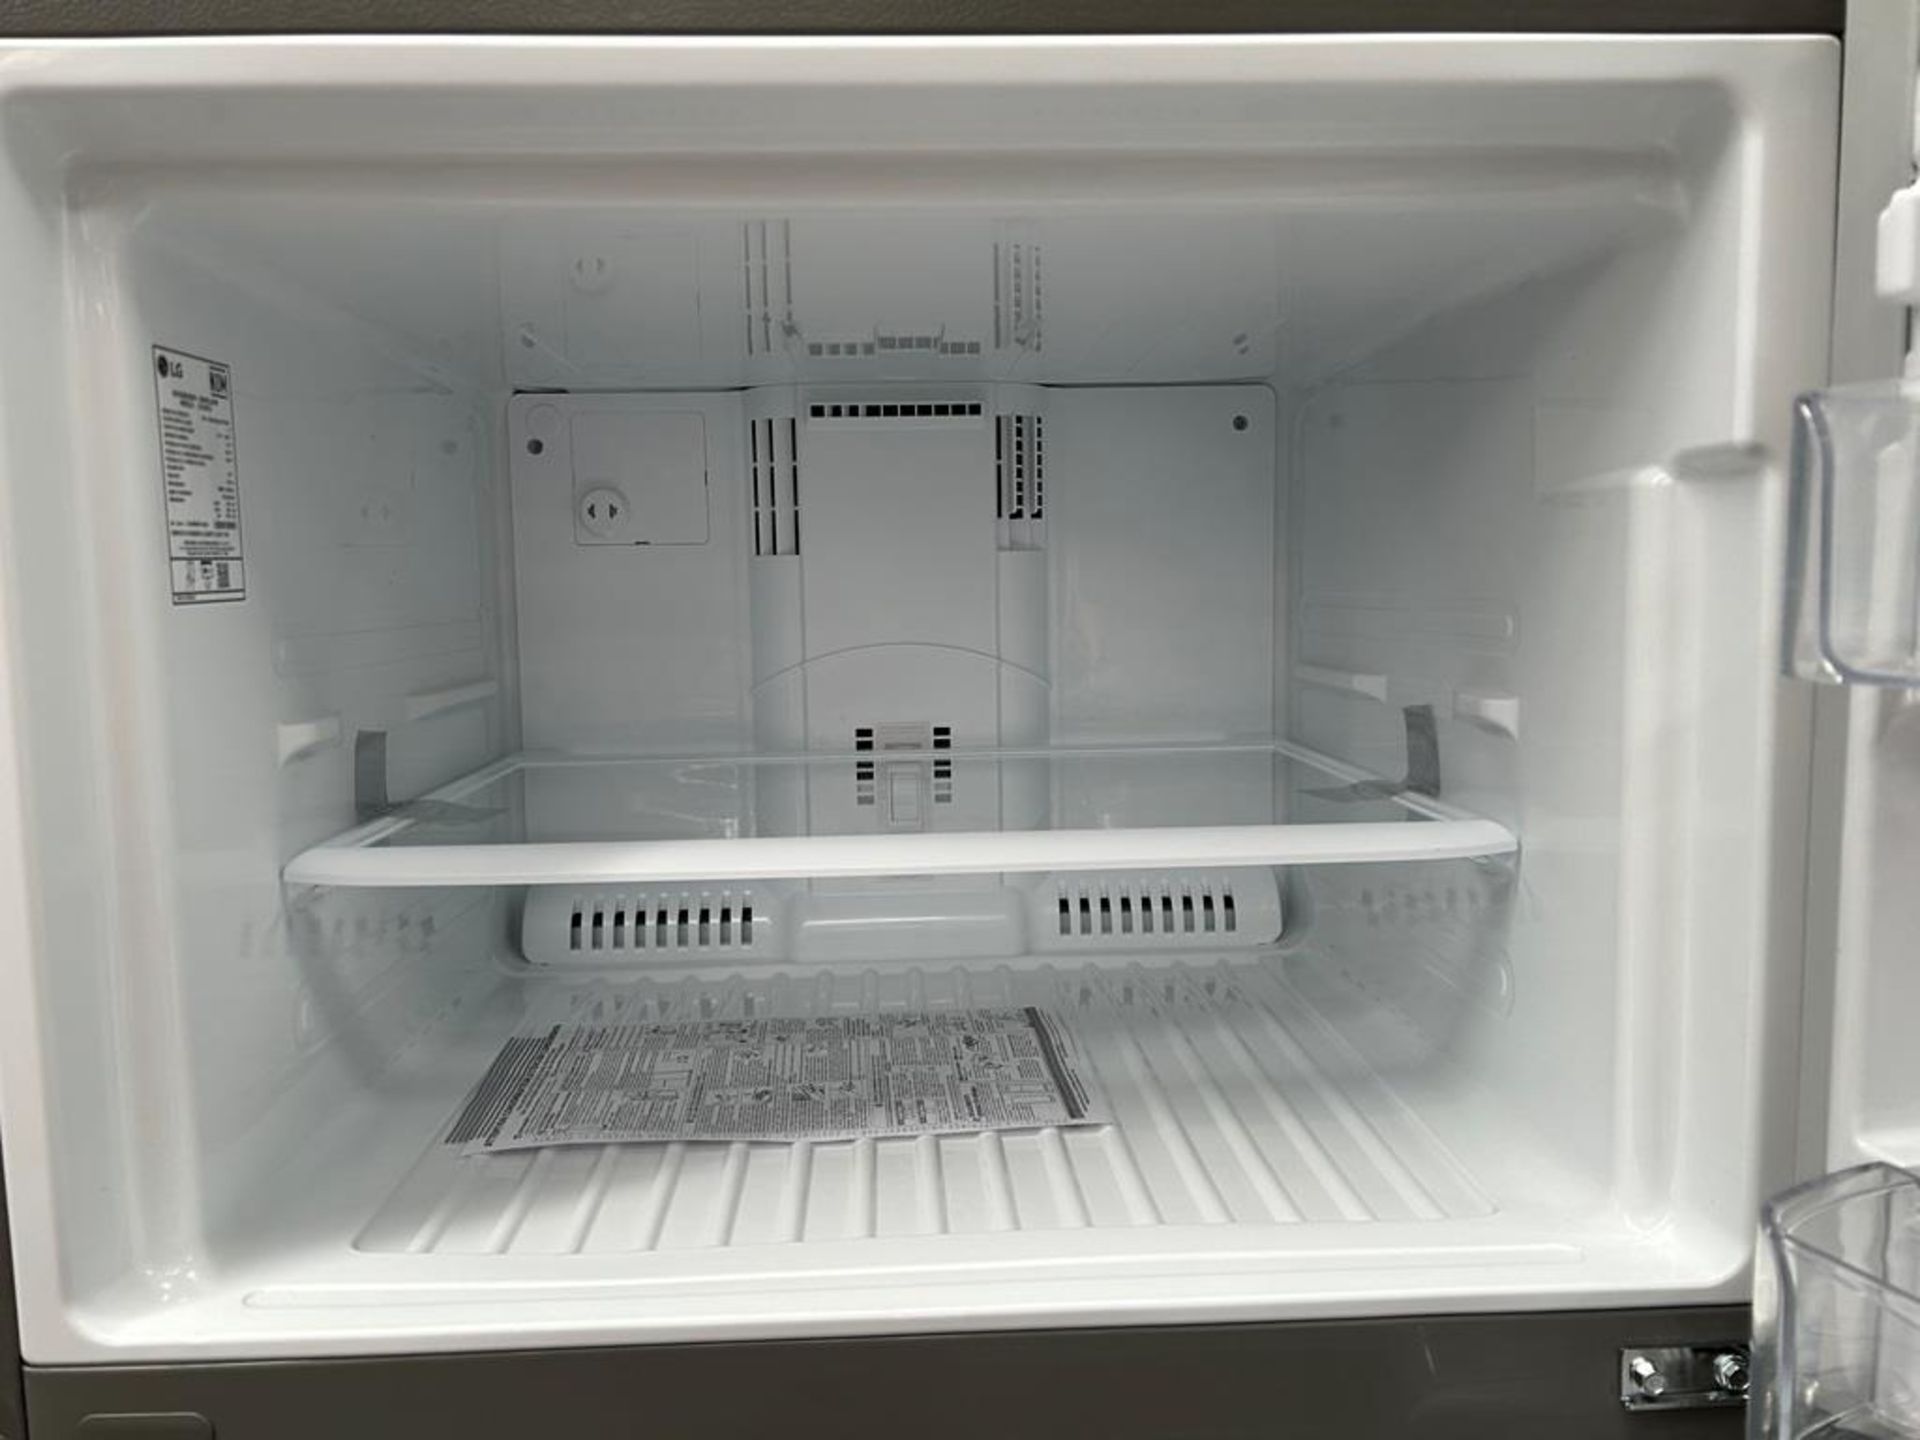 (NUEVO) Refrigerador Marca LG, Modelo LT57BPSX, Serie D1X339, Color GRIS - Image 5 of 11